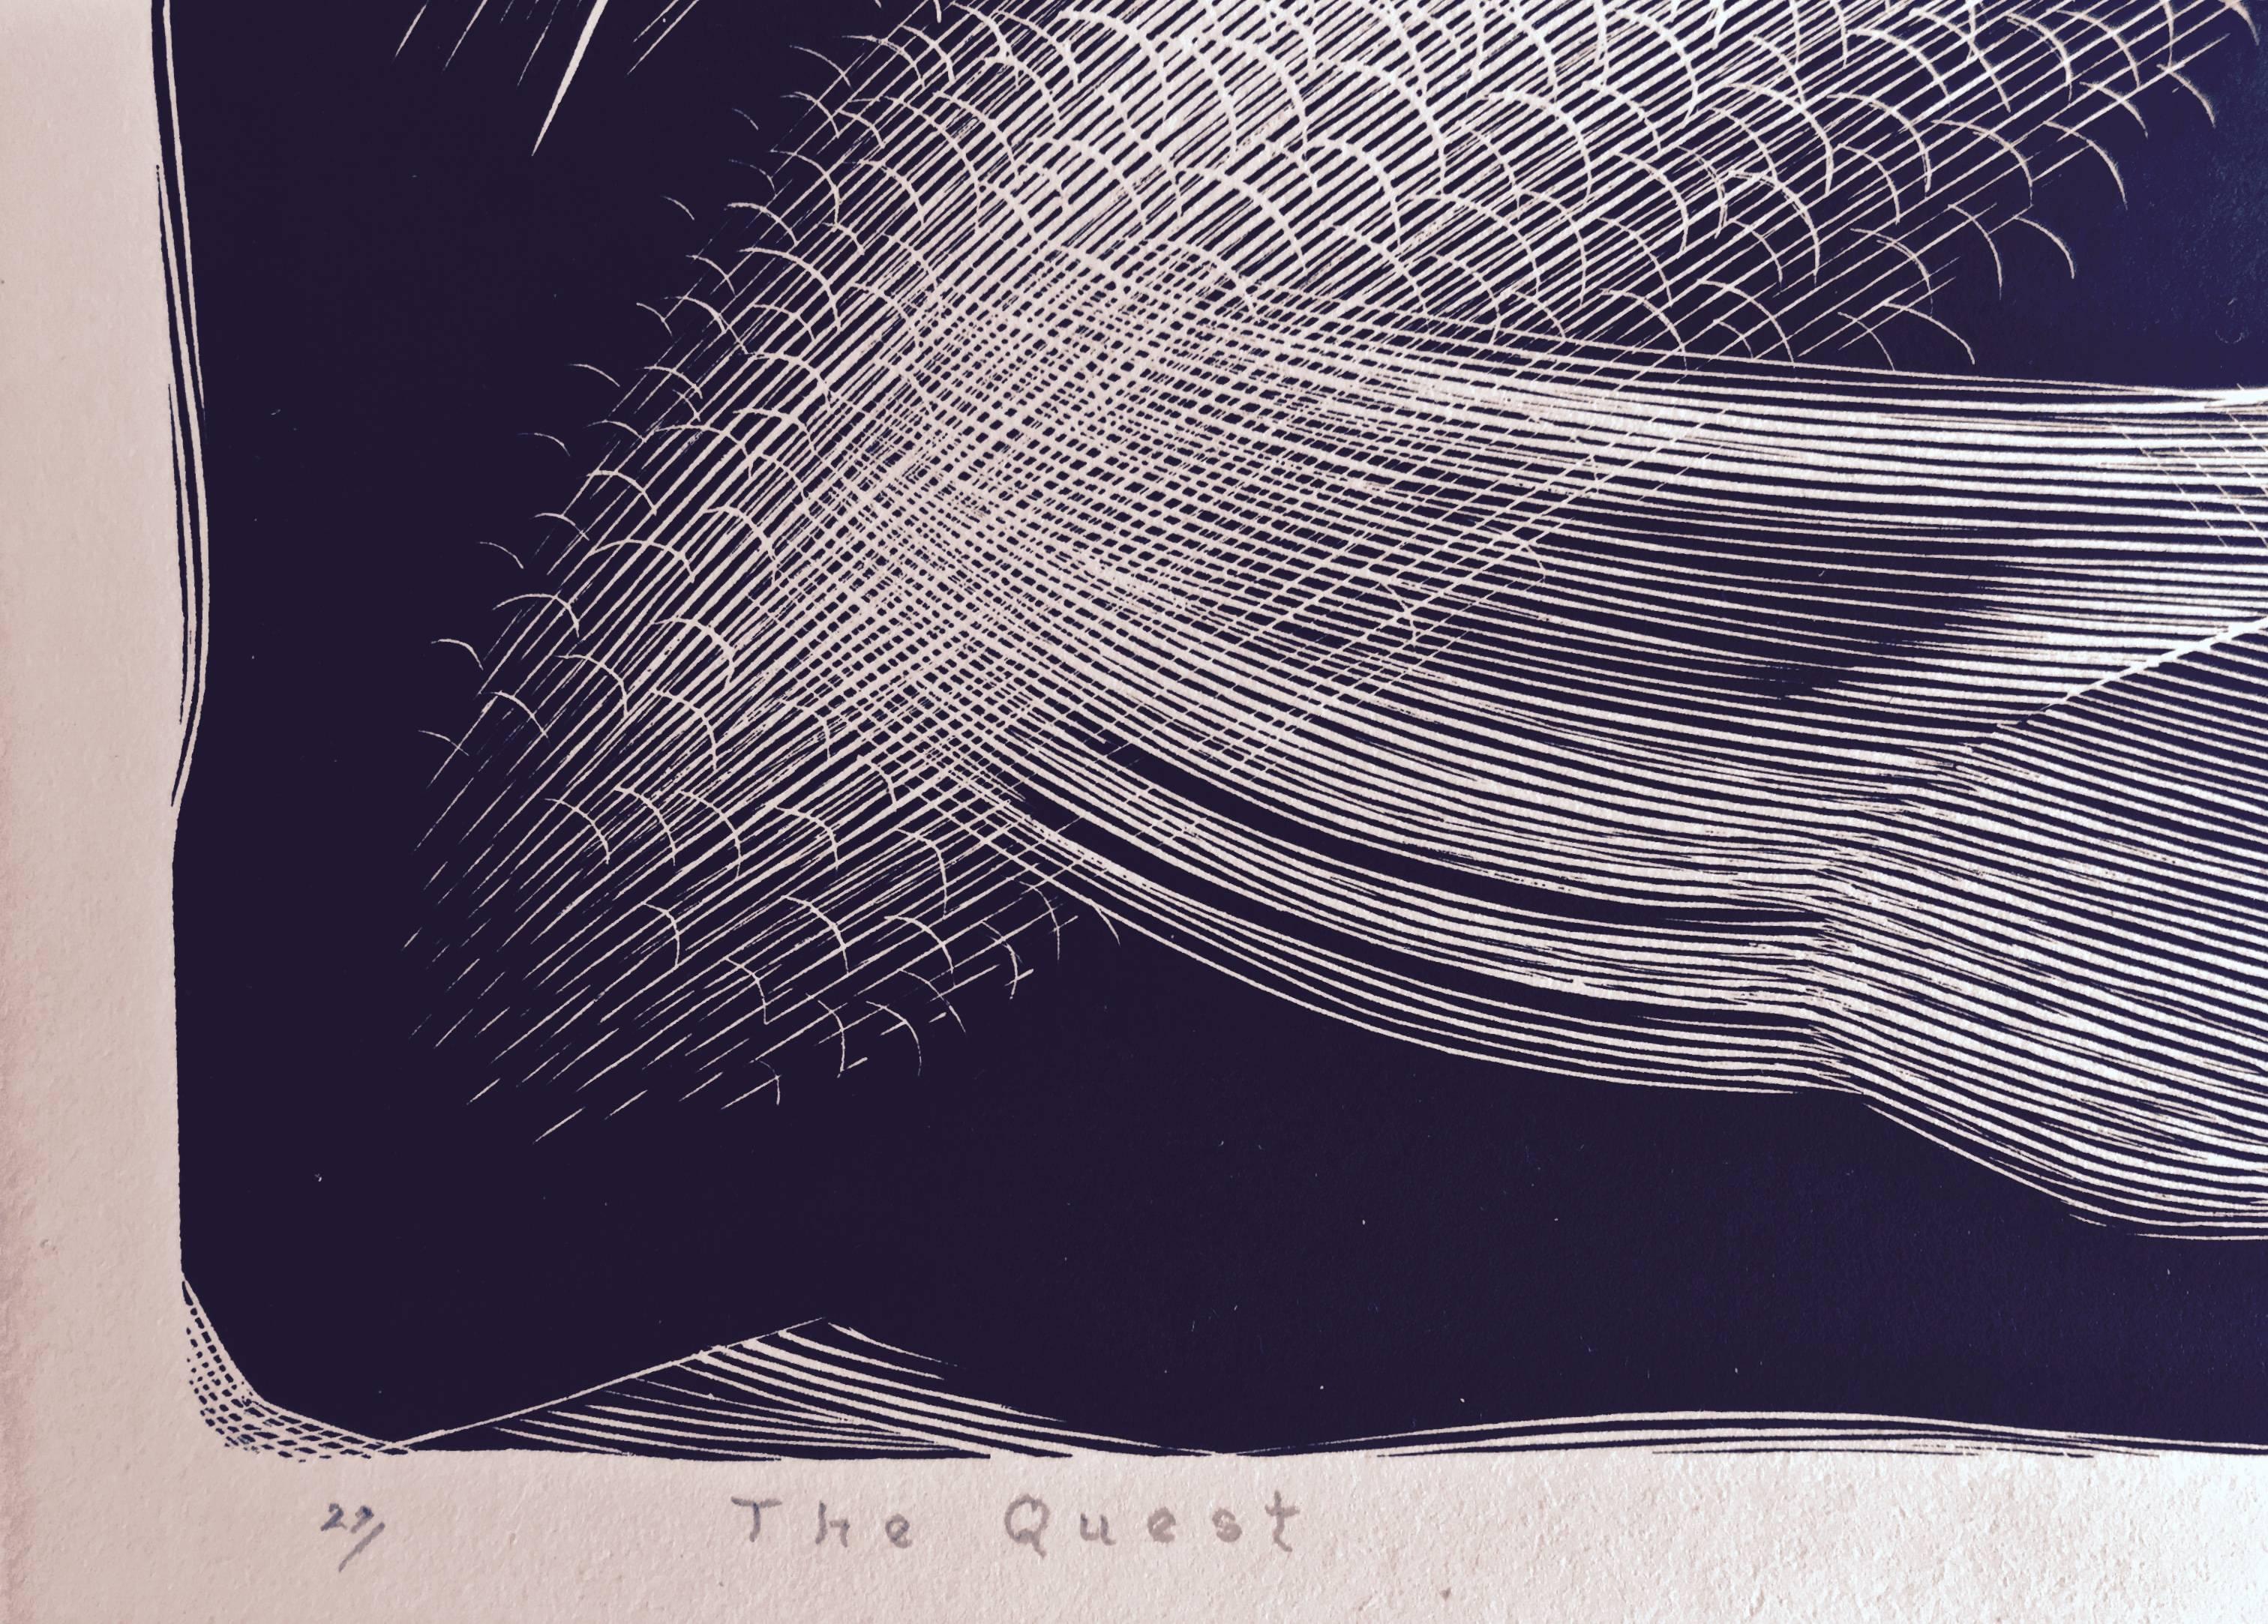 The Quest - Print by Paul Landacre